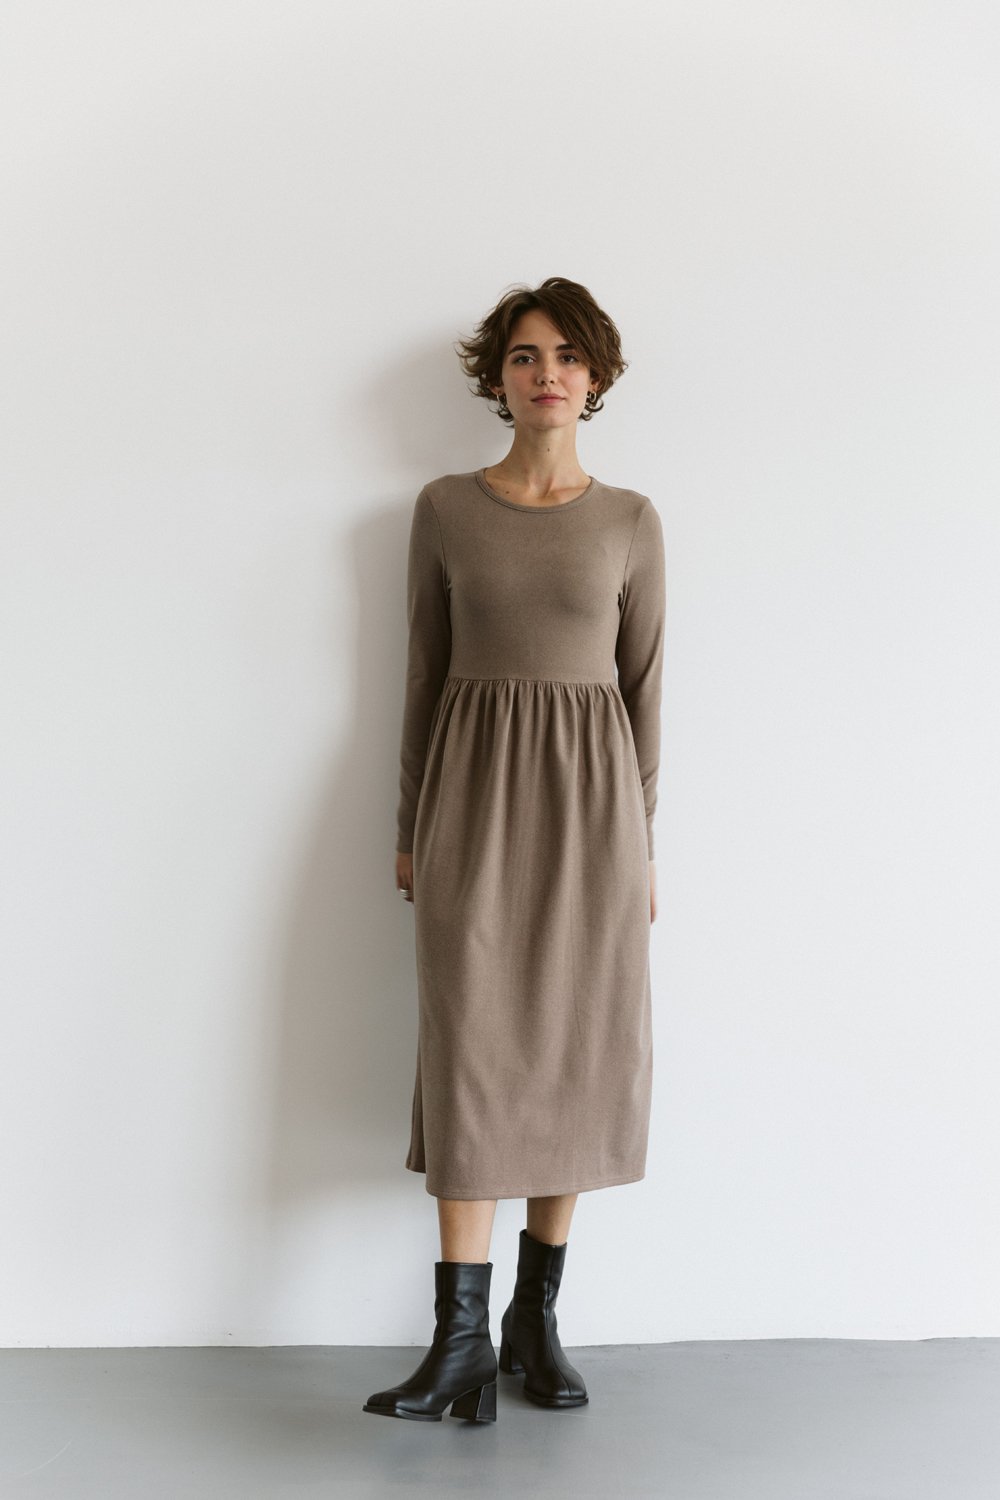 High waist dress in Hazelnut color